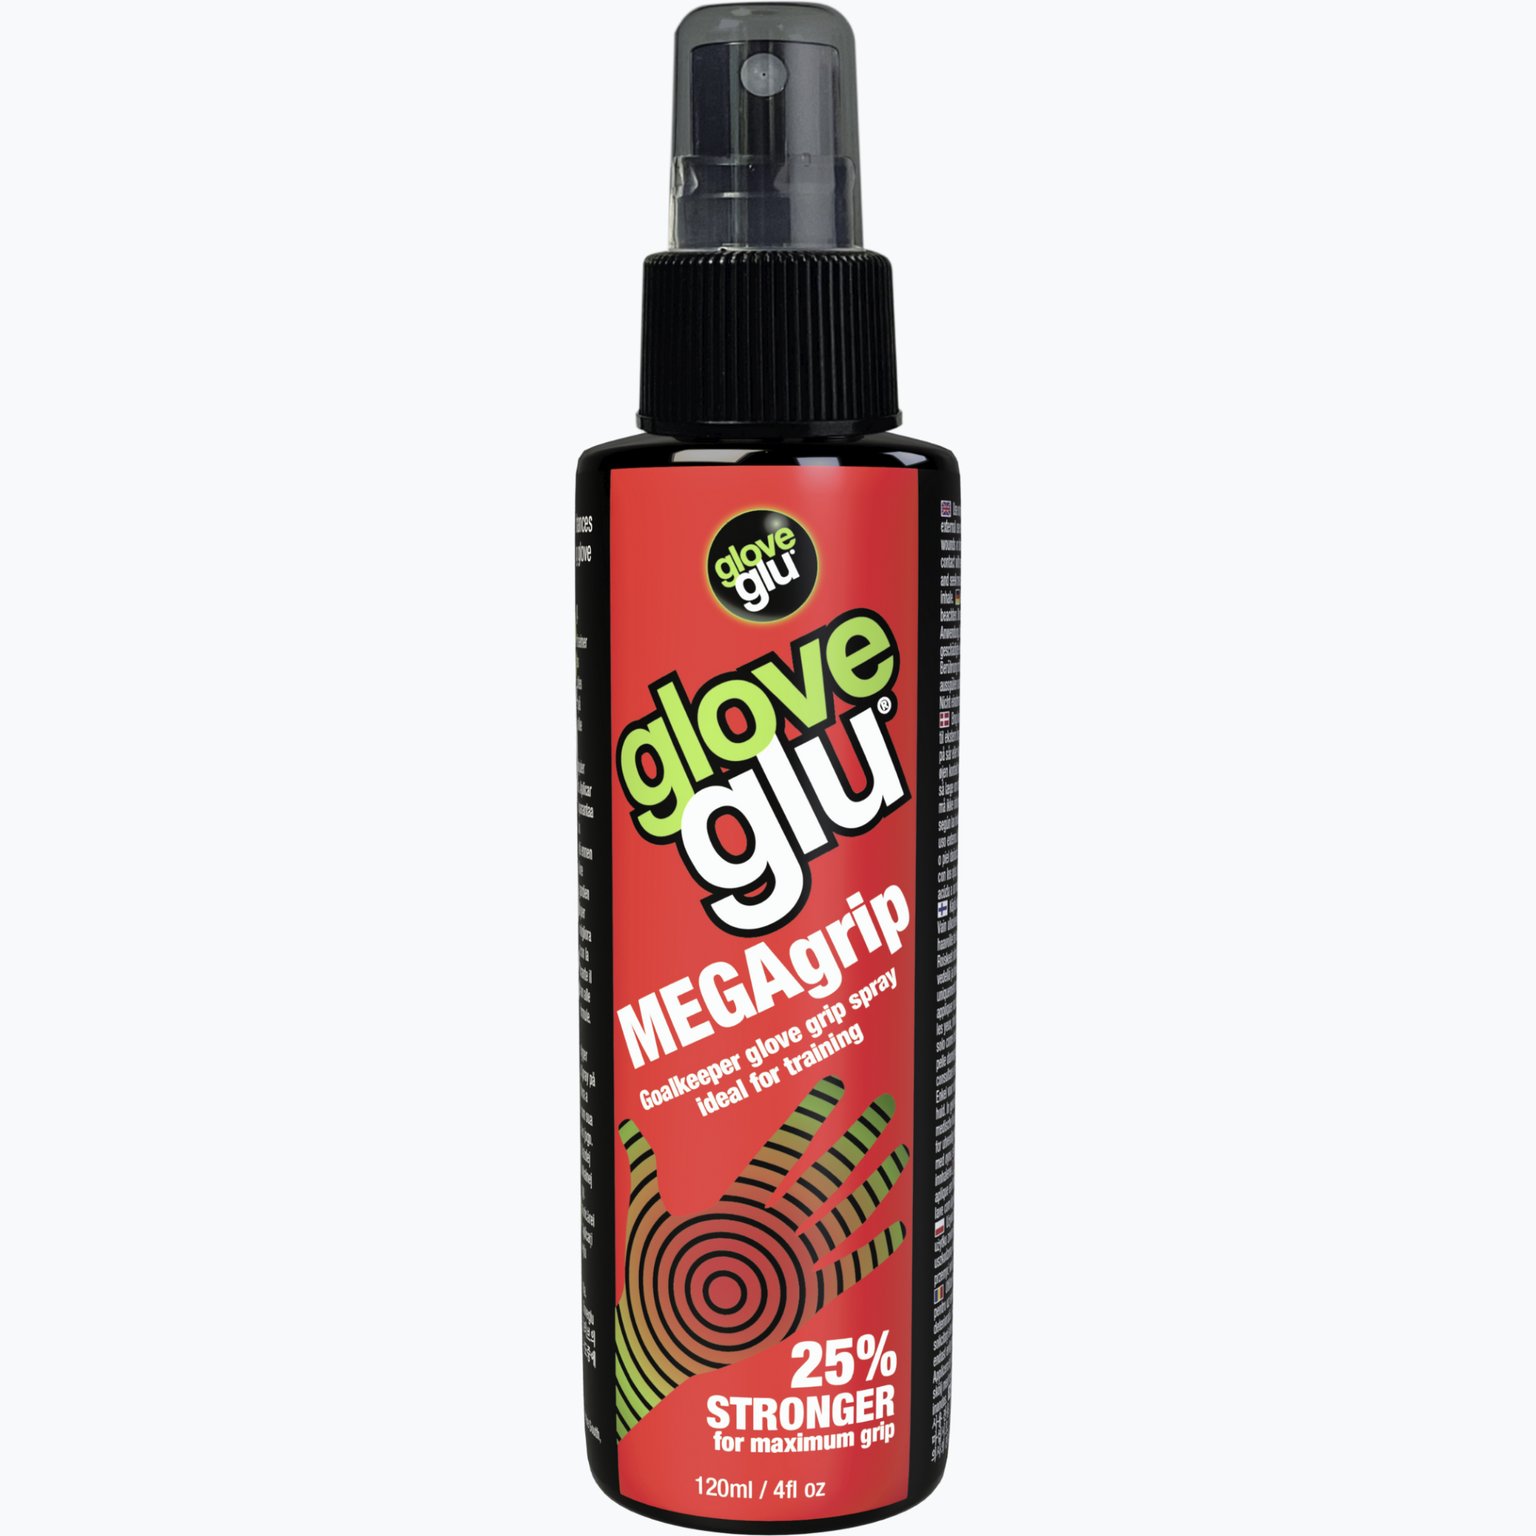 Megagrip spray